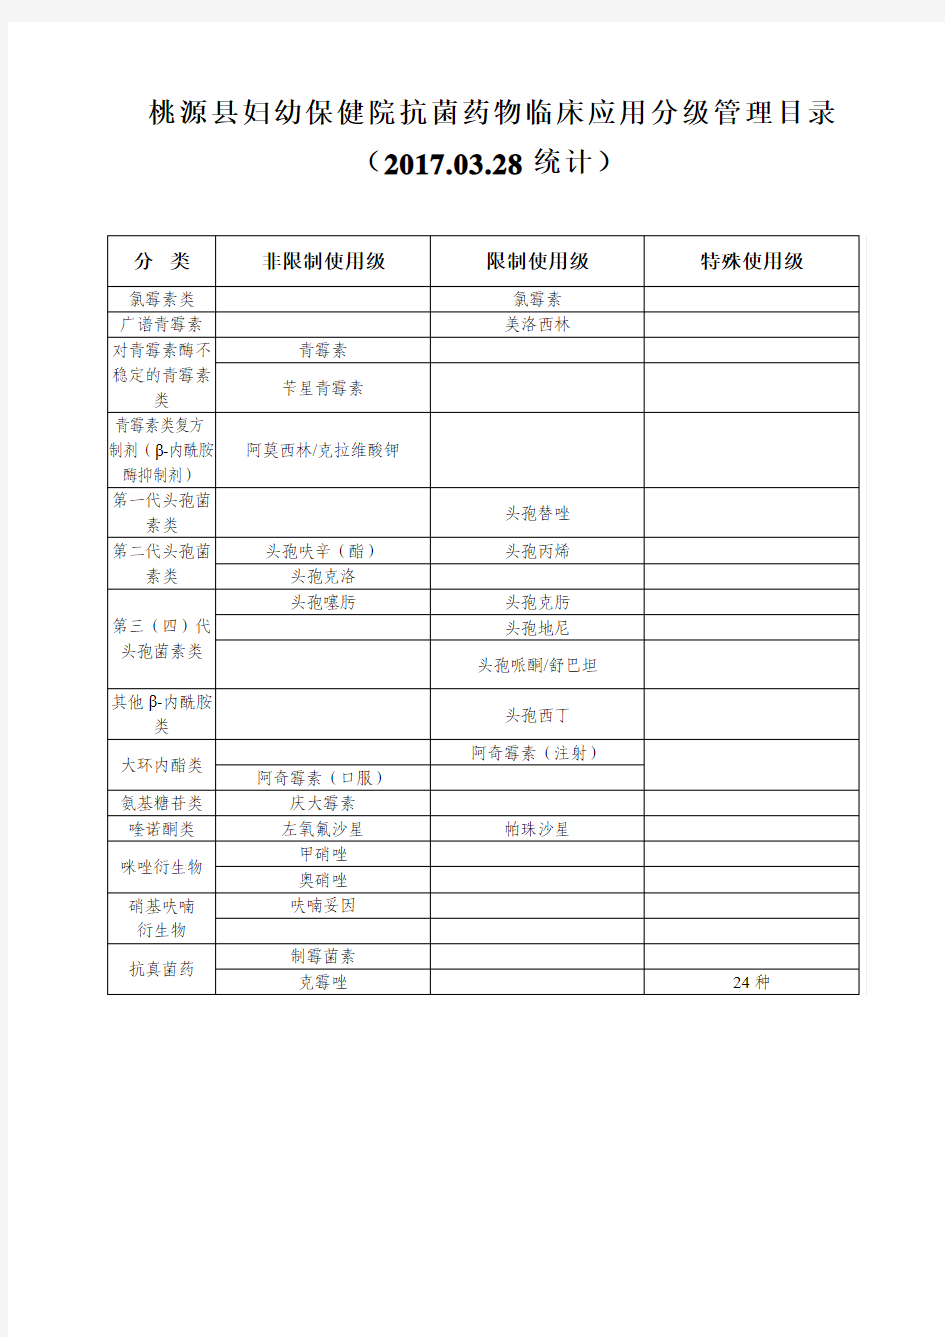 桃源县妇幼保健院抗菌药物临床应用分级管理目录(2017.03.28统计)